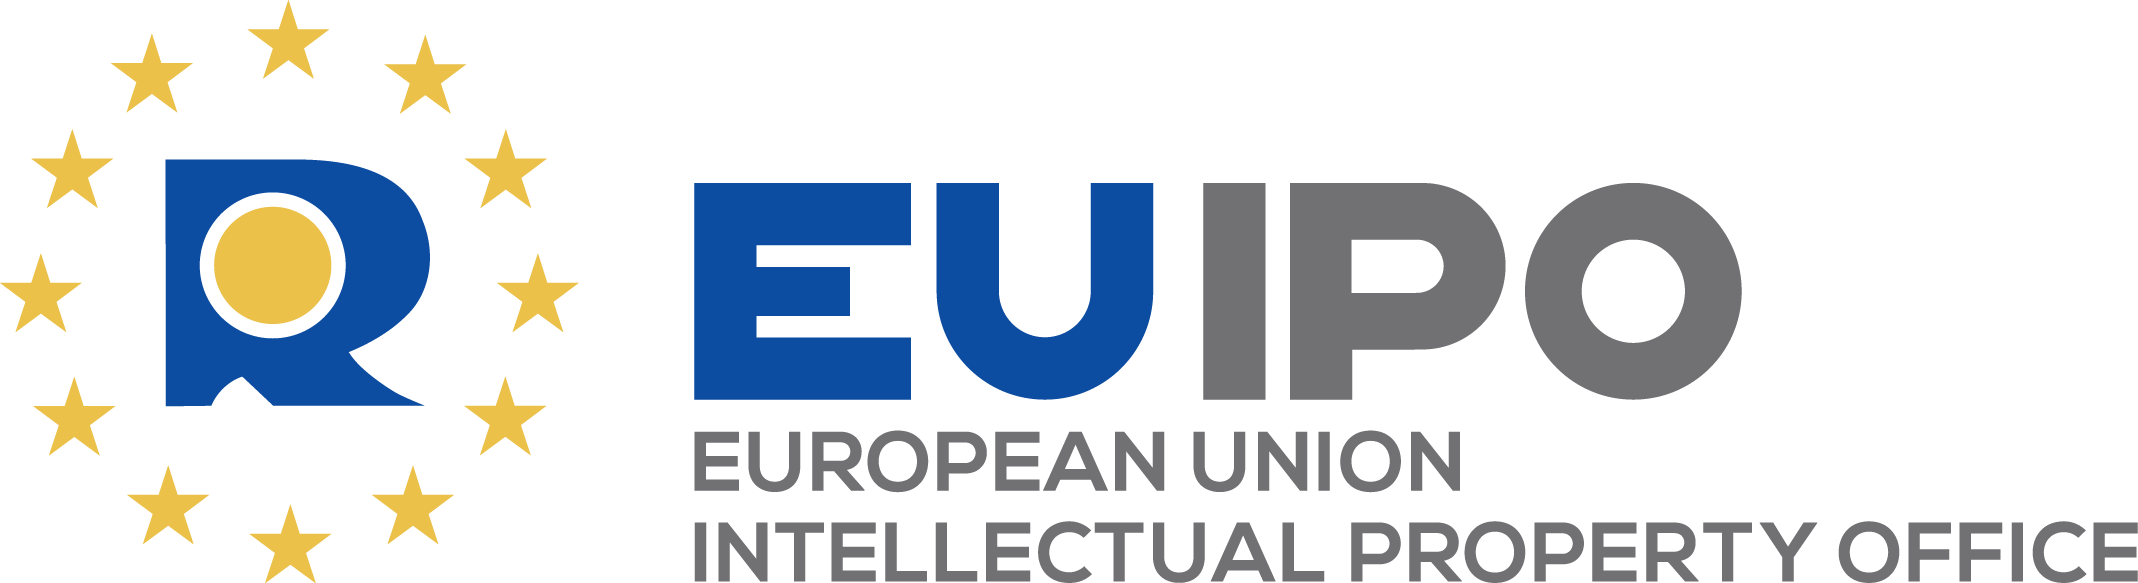 marca de la unión europea